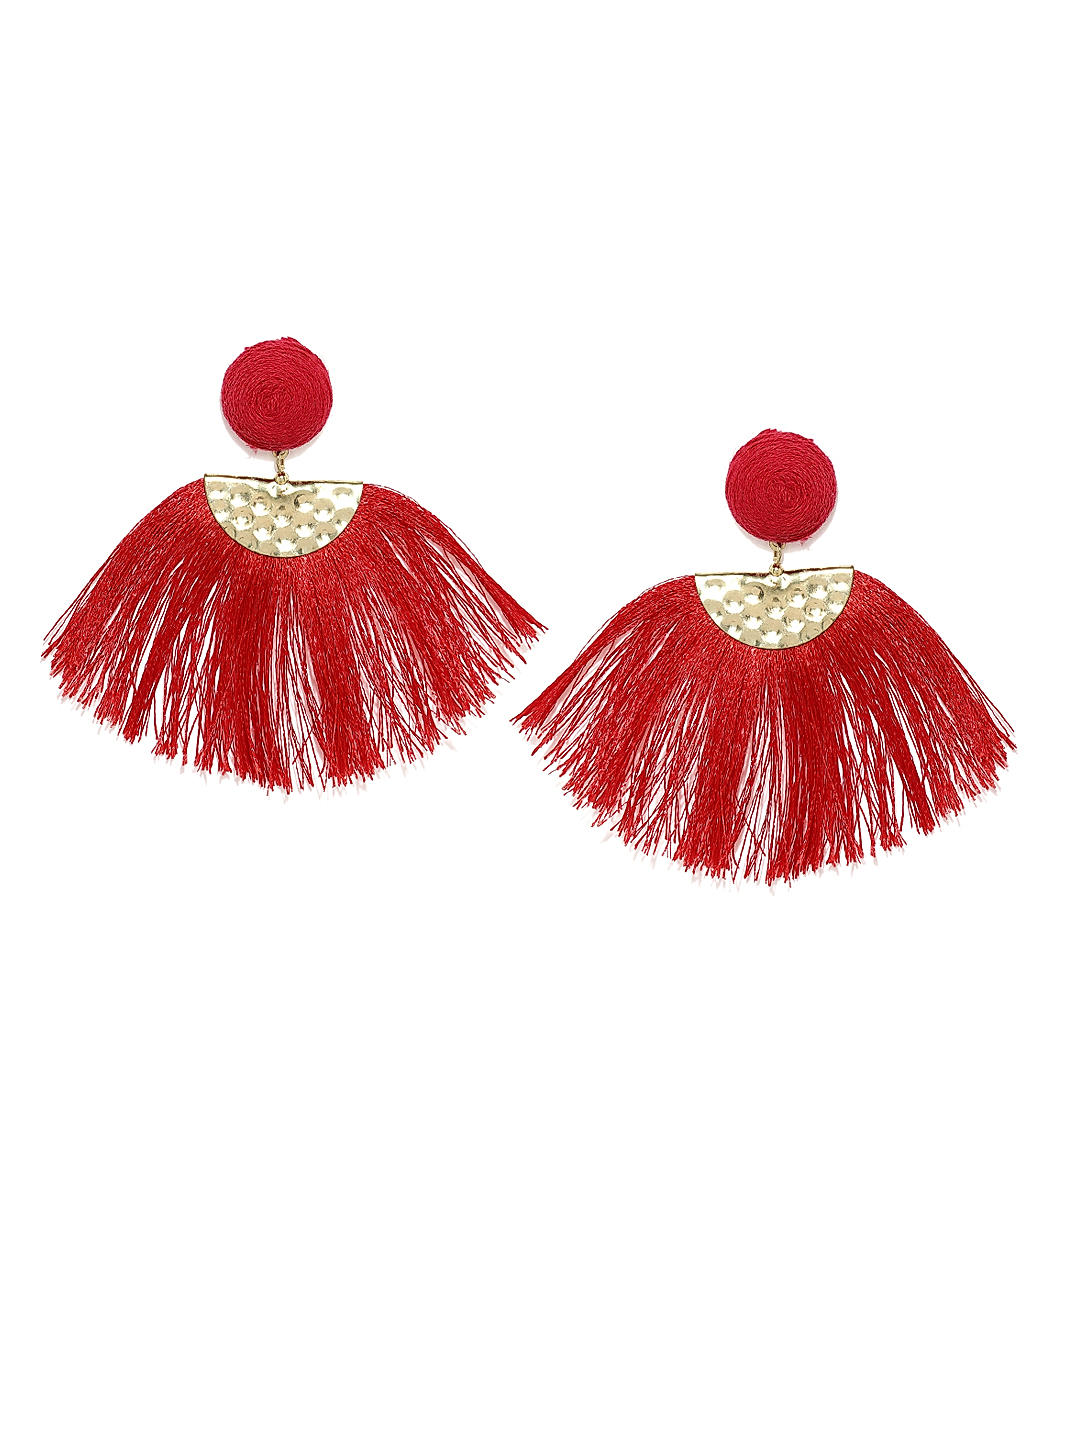 Flamenco Red Tassel Earrings | KEISELA